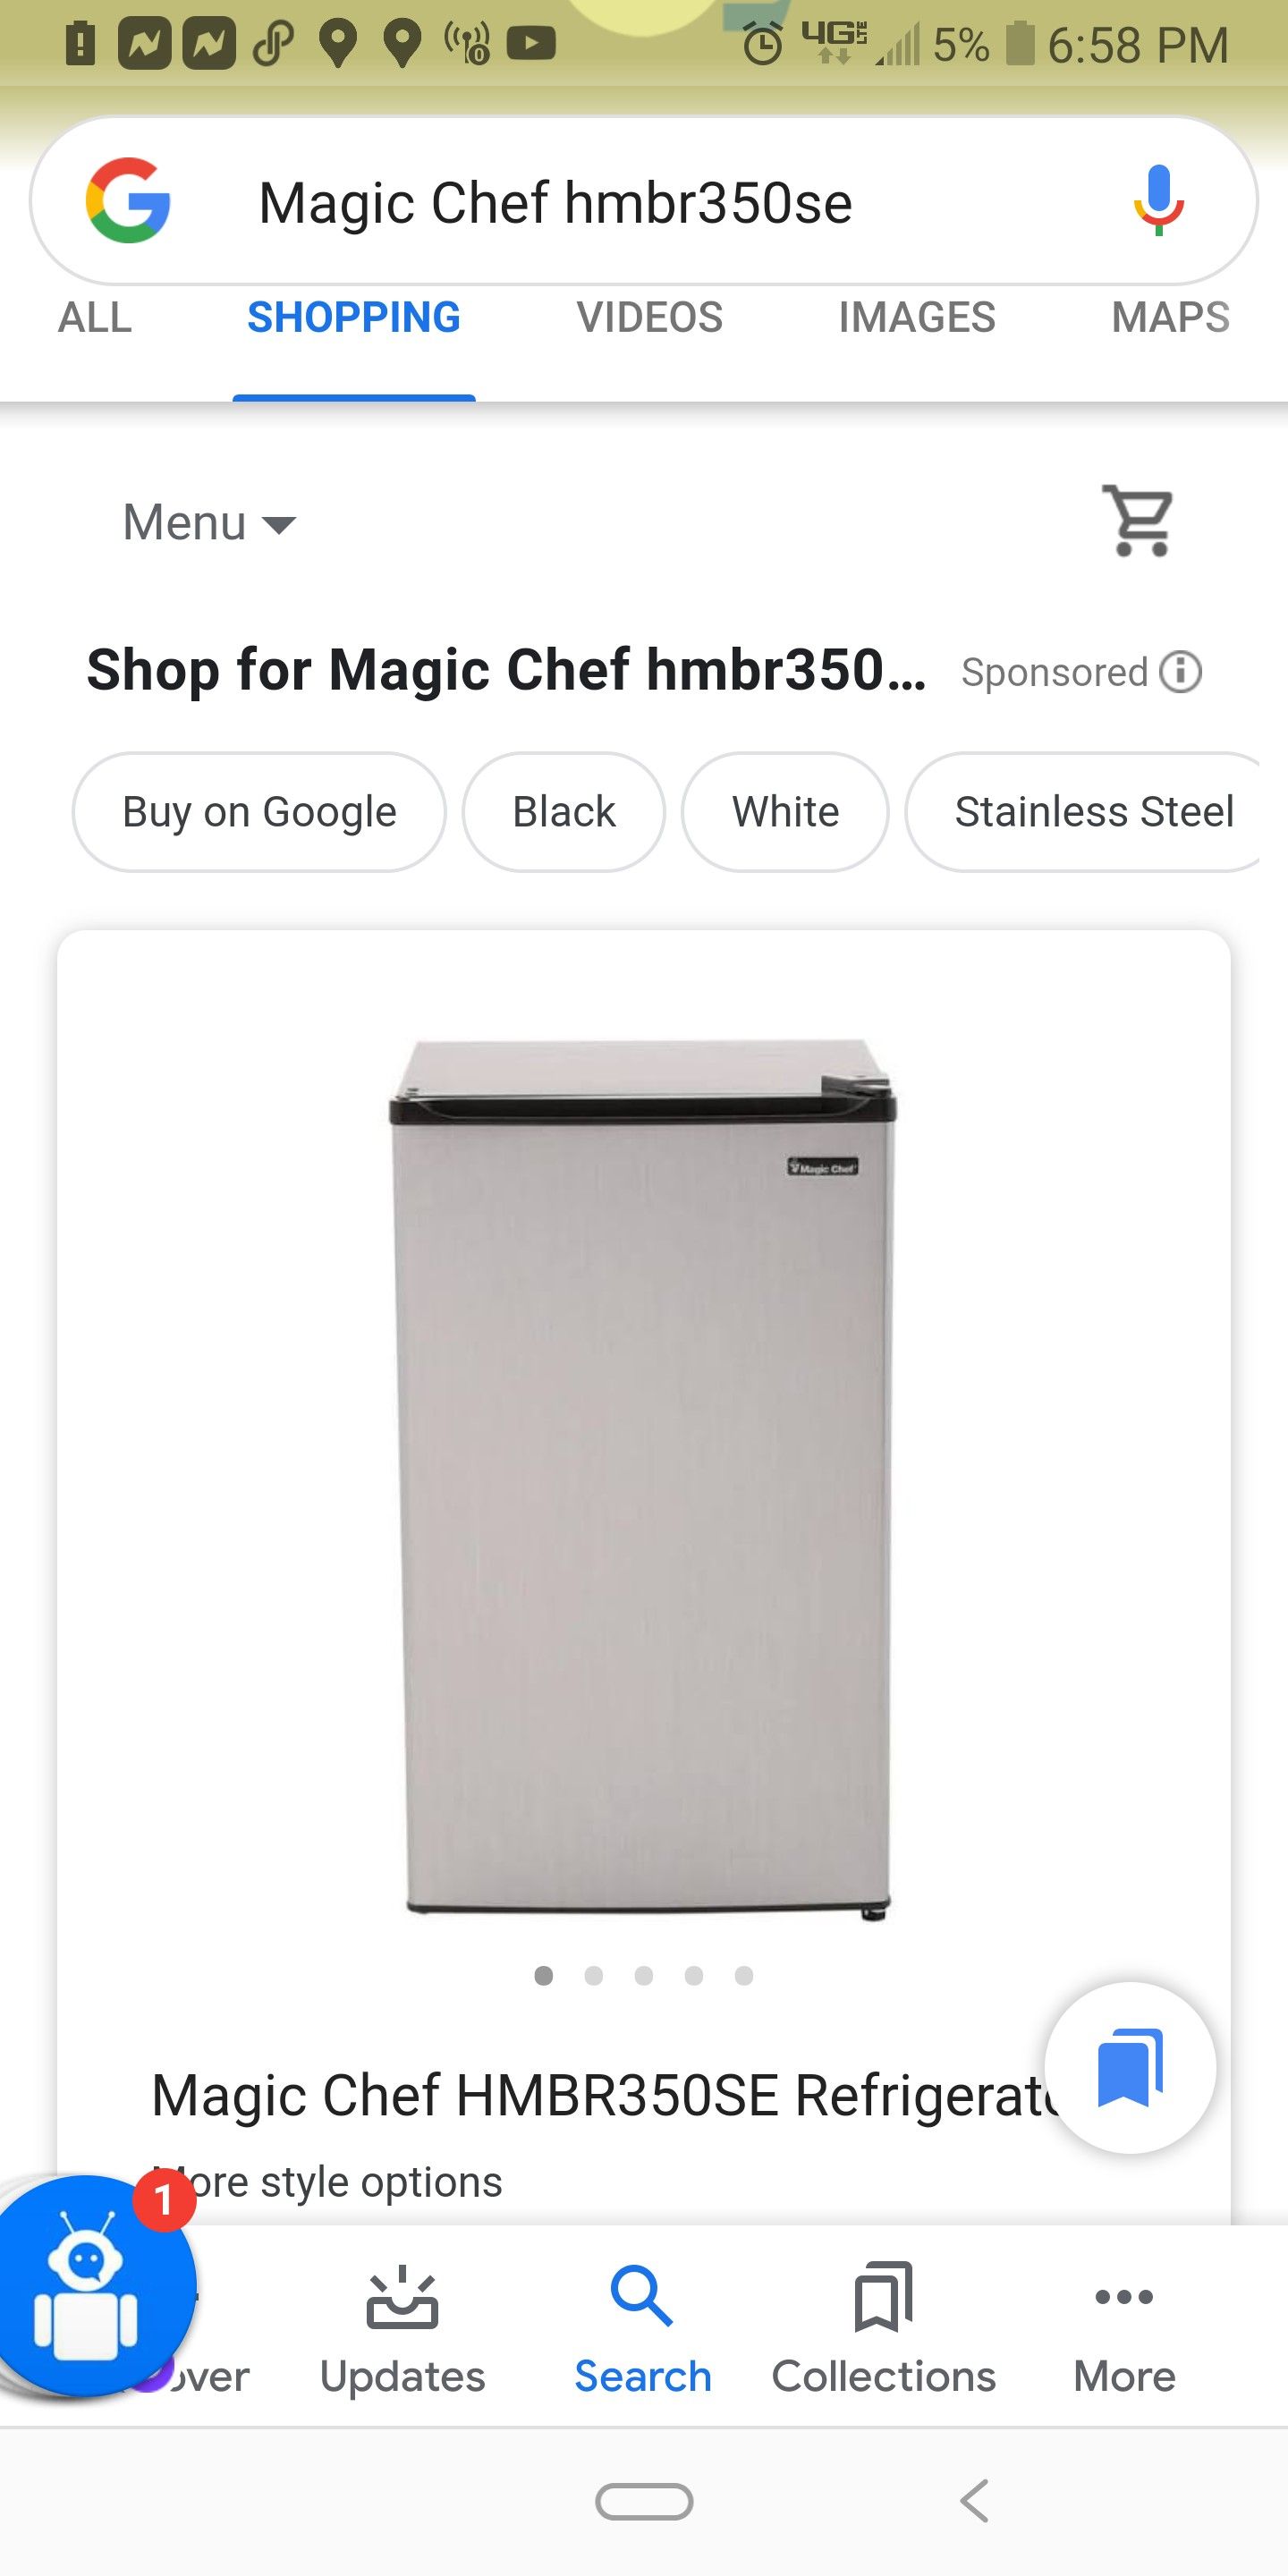 Magic Chef HMBR350SE Refrigerator (53)